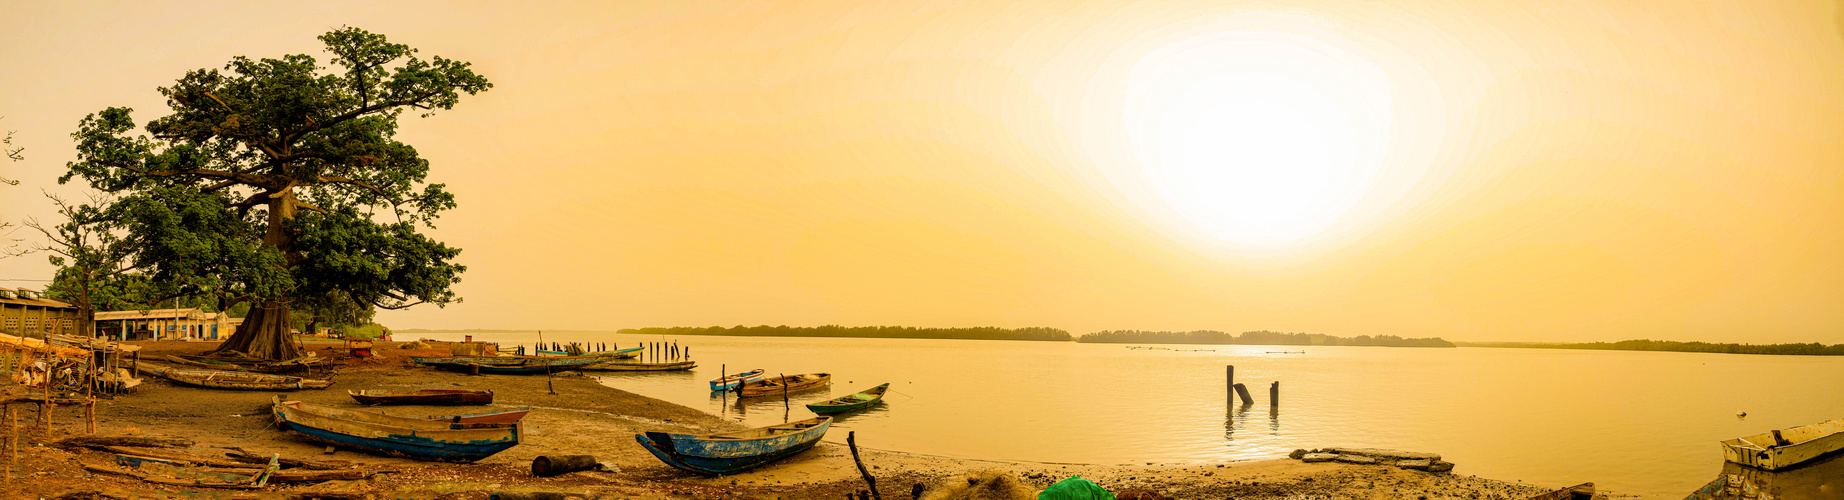 Sonnenaufgang am Bintang Bolong, The Gambia   Panorama